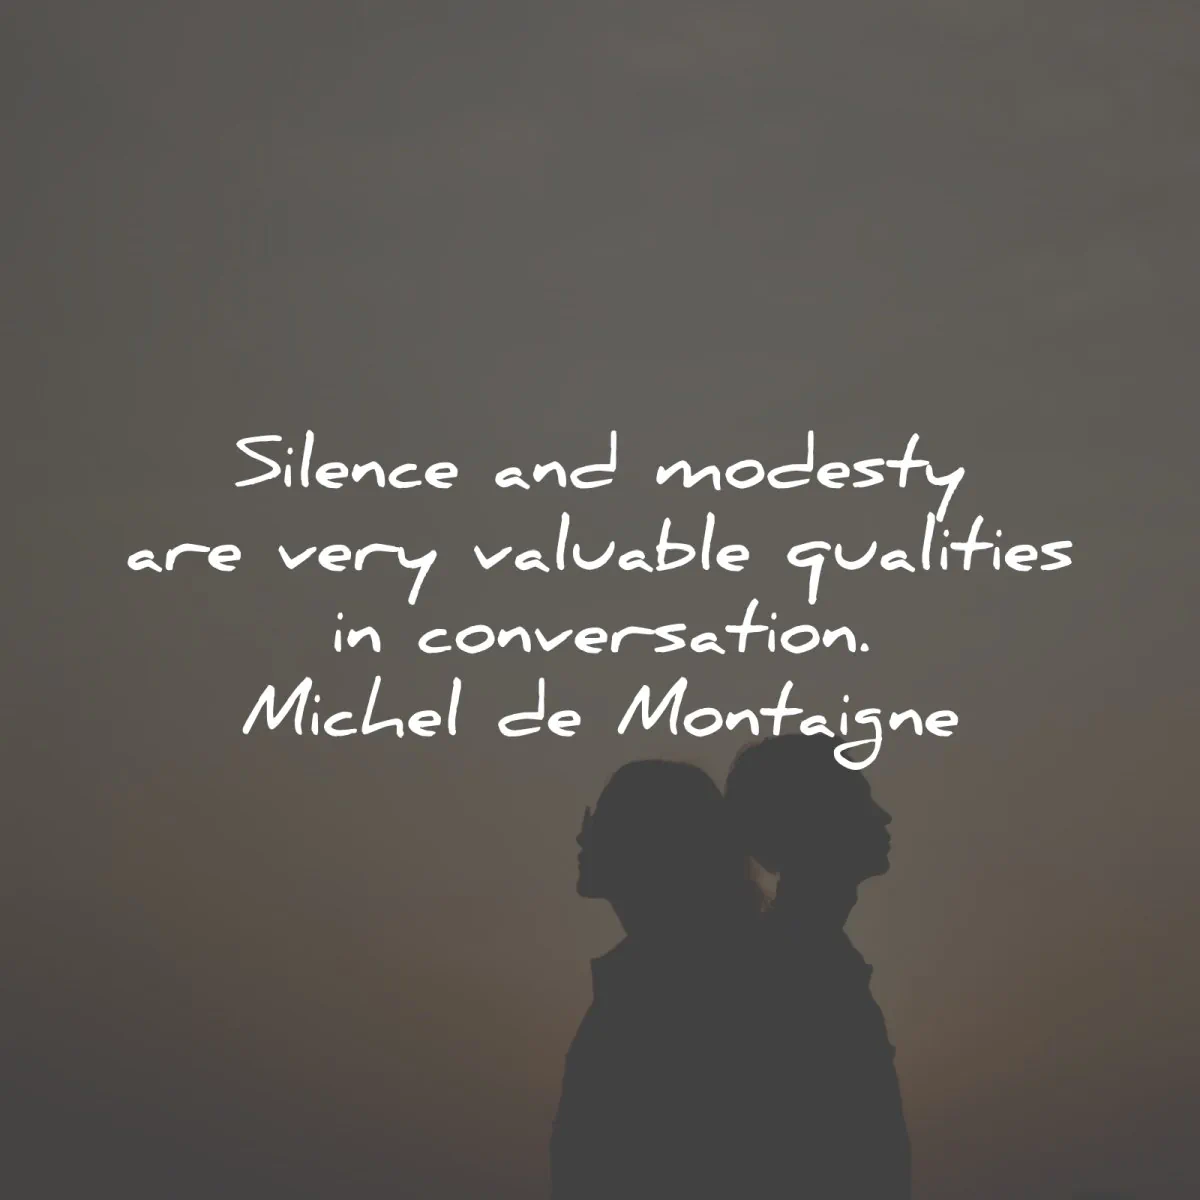 michel de montaigne quotes silence modesty qualities conversation wisdom